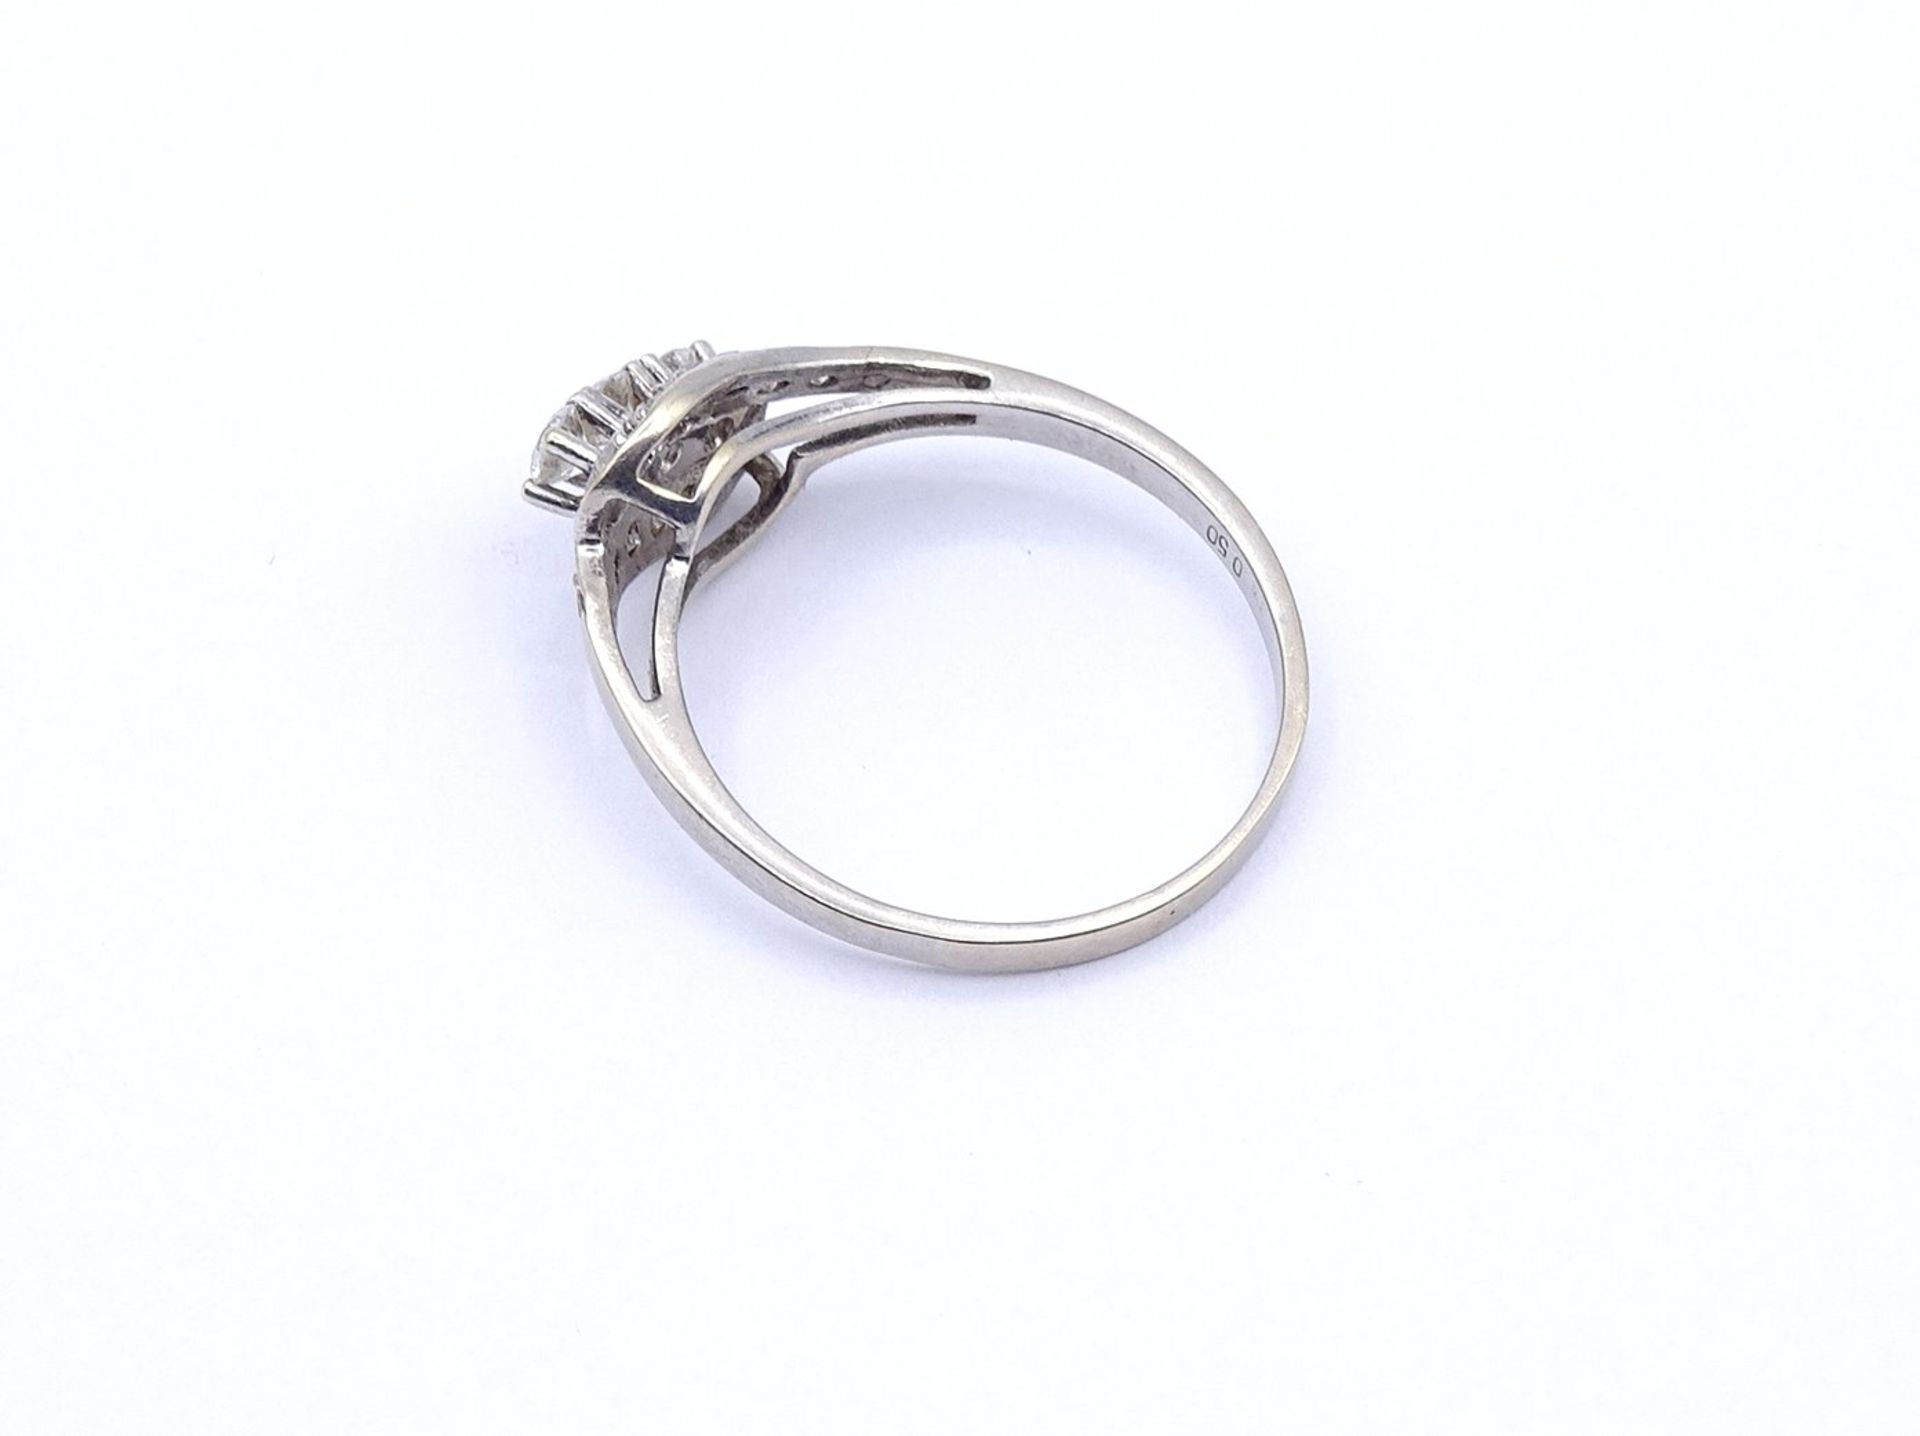 Brillant Ring WG 585/000 mit Brillanten zus. 0,50ct., 2,7g., RG 60 - Image 4 of 4